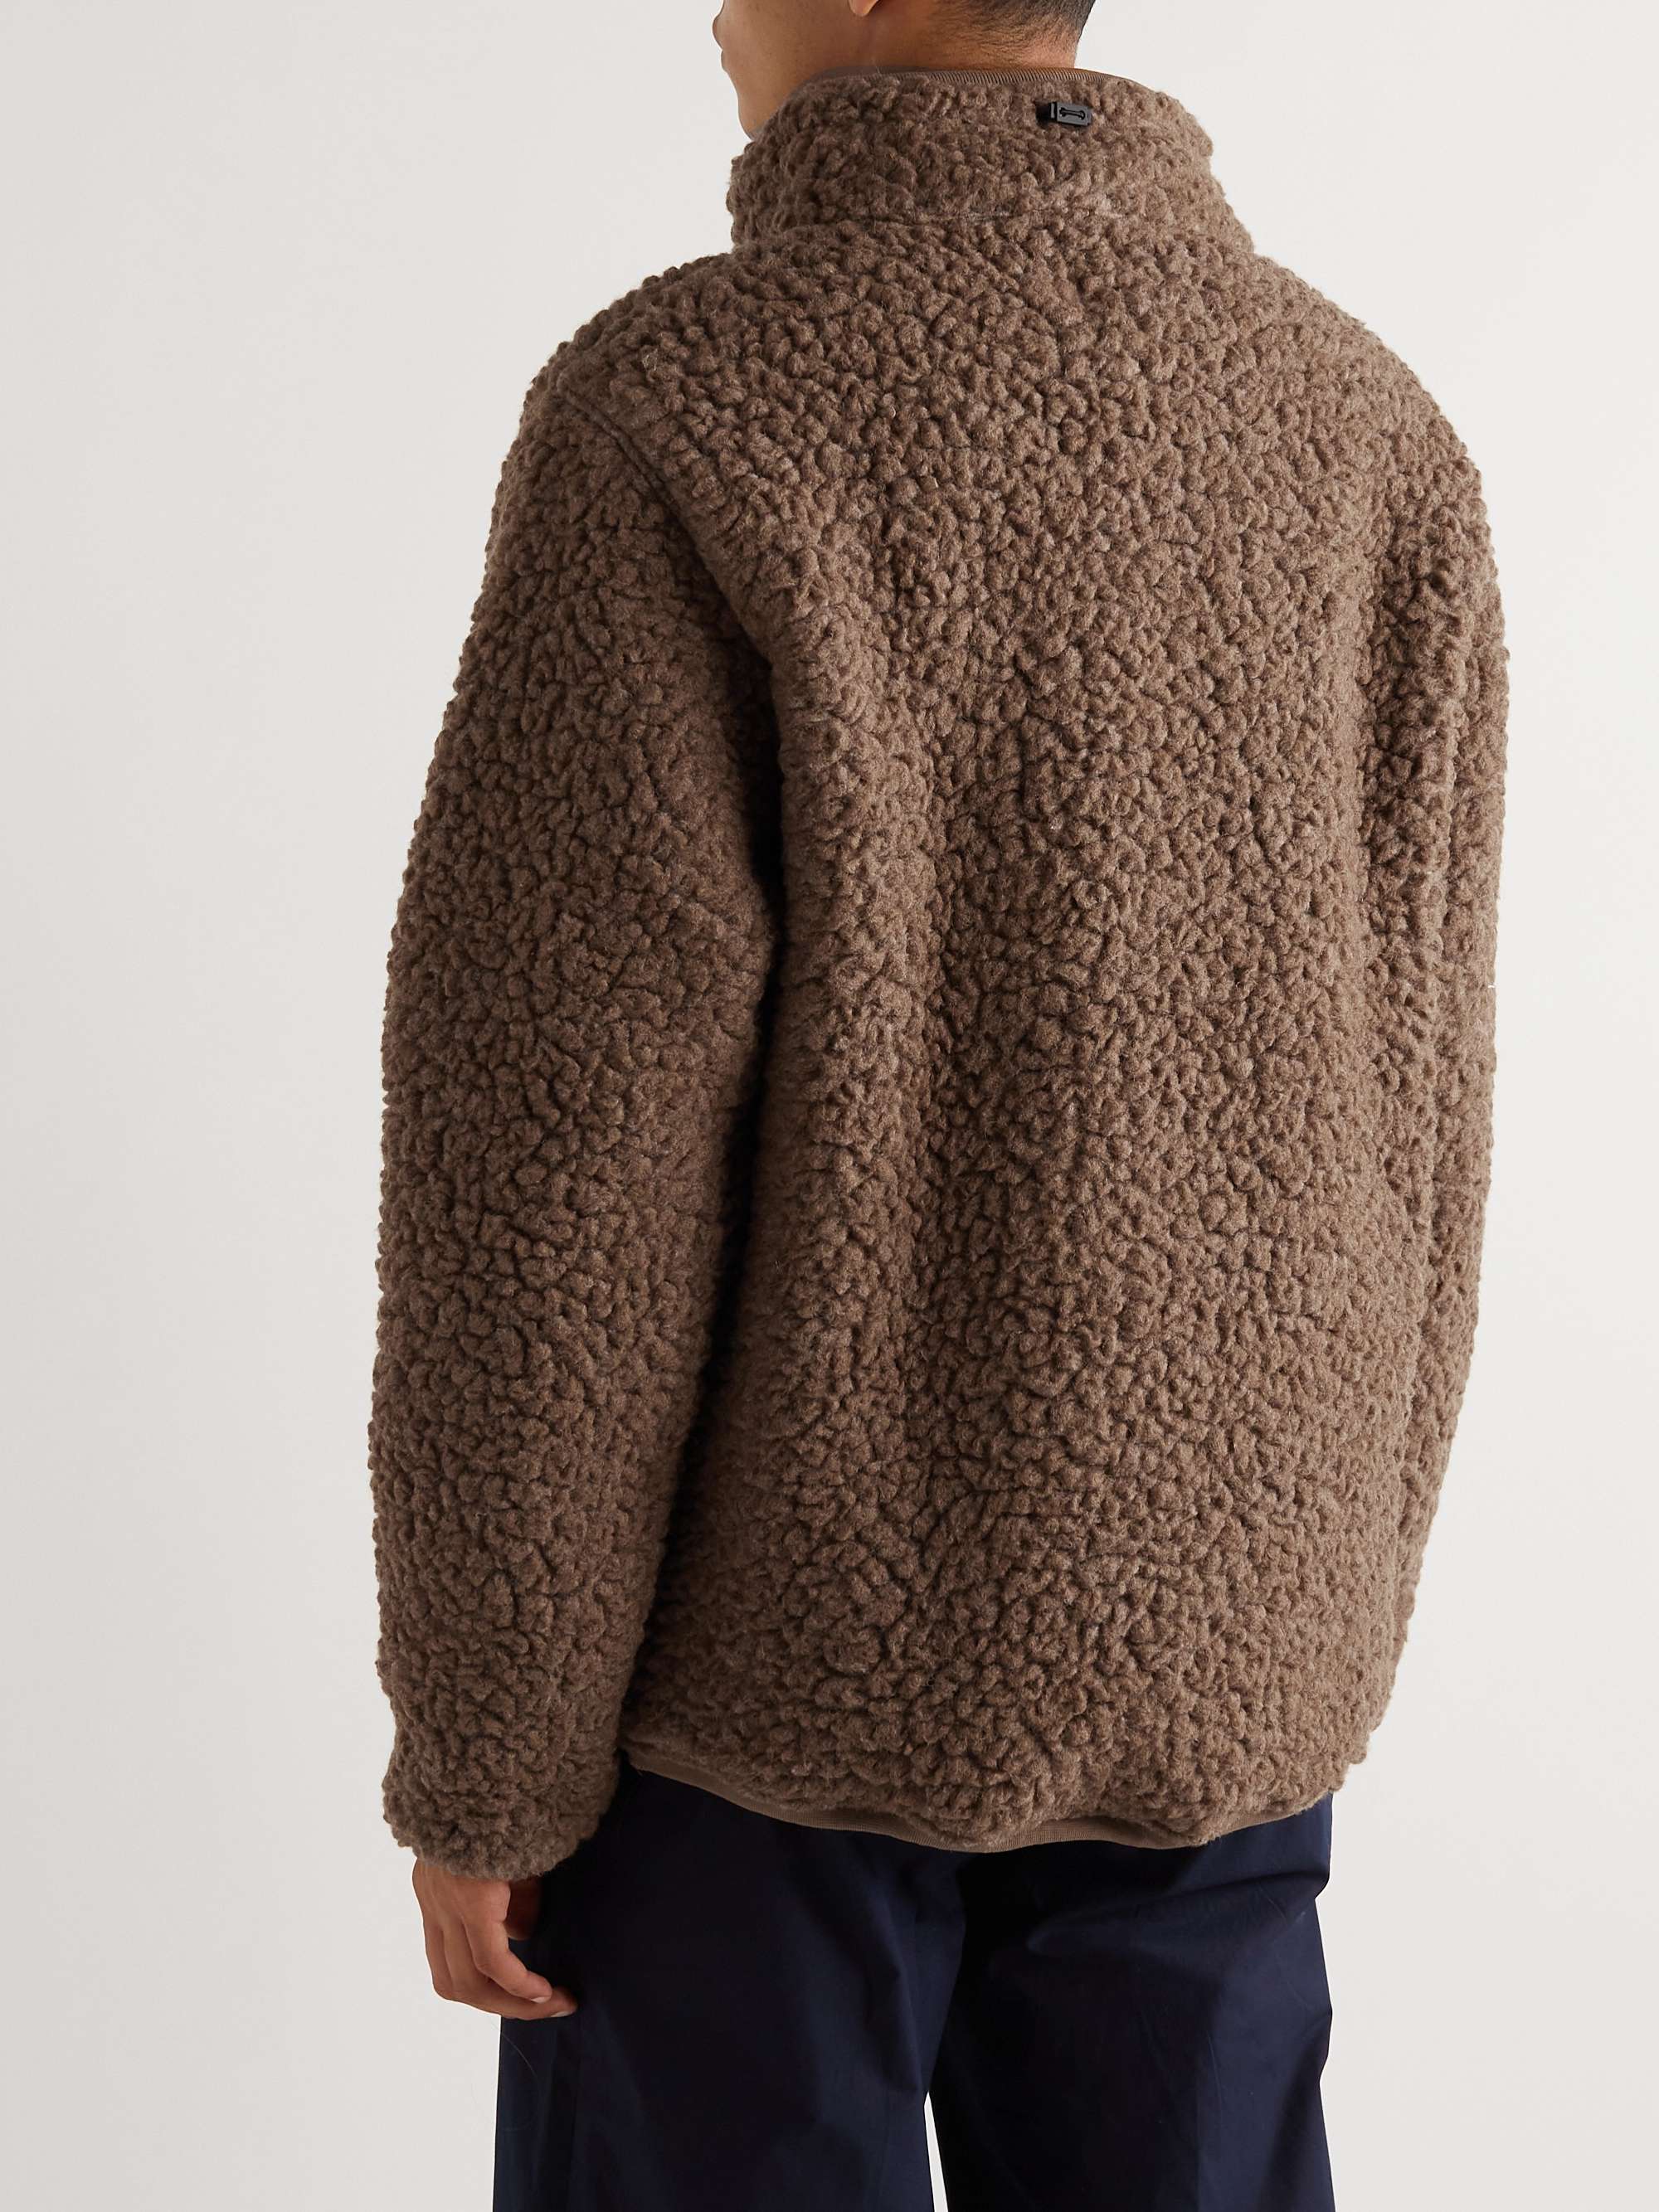 KESTIN Crieff Fleece Half-Zip Sweater